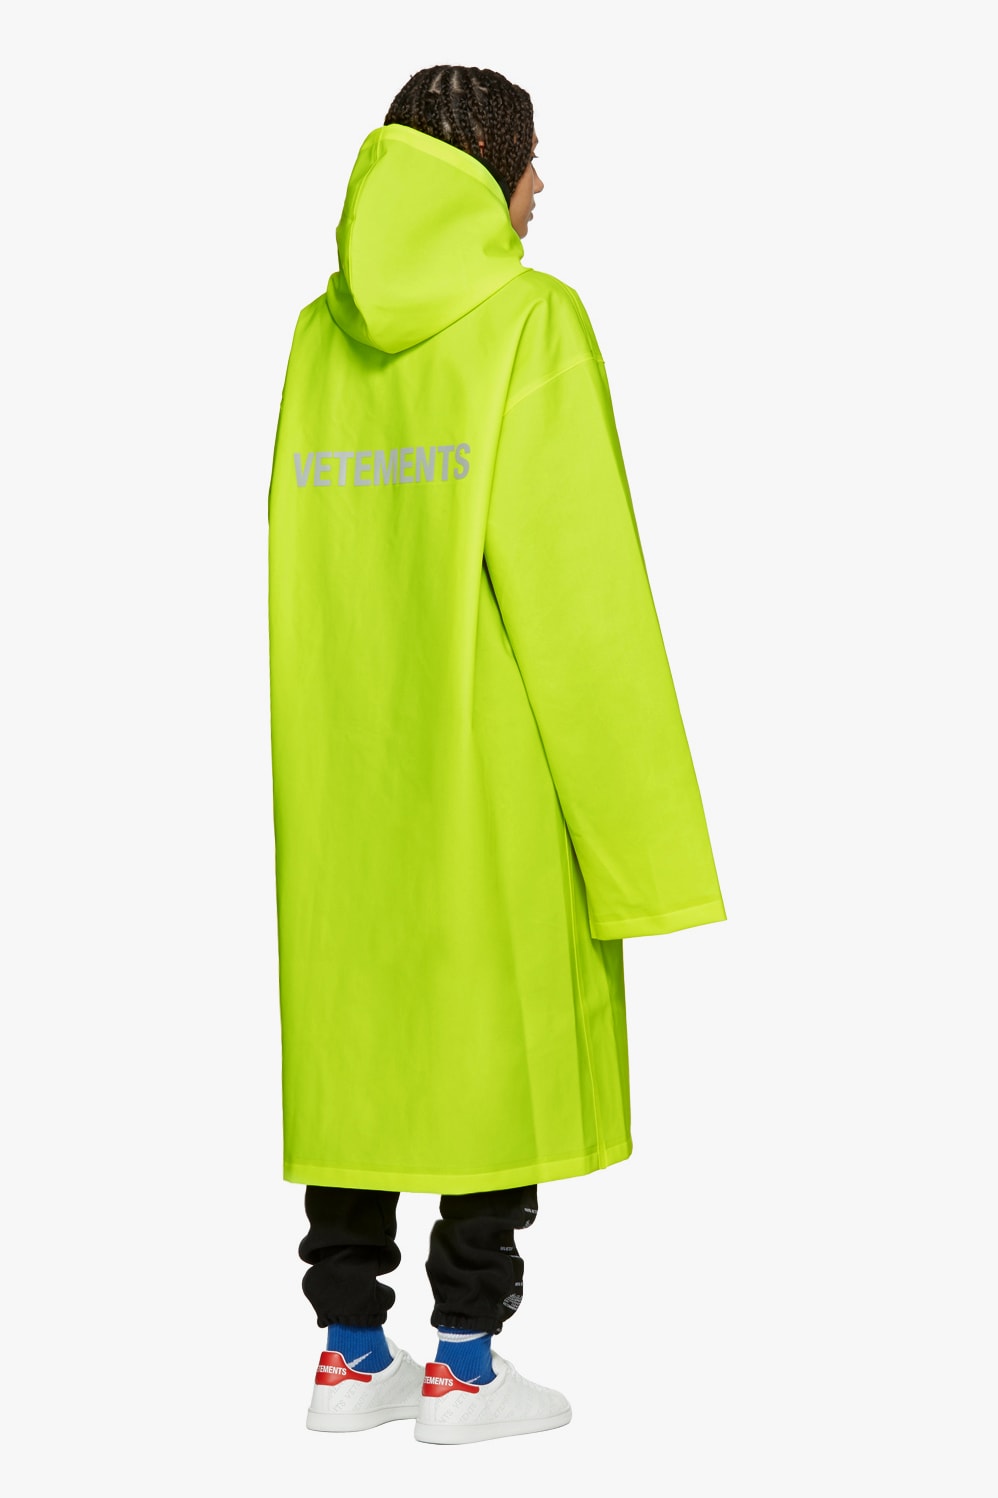 Shop Vetements Spring/Summer Collection Drop Hoodie Raincoat Deconstructed Demna Gvasalia Swimsuit